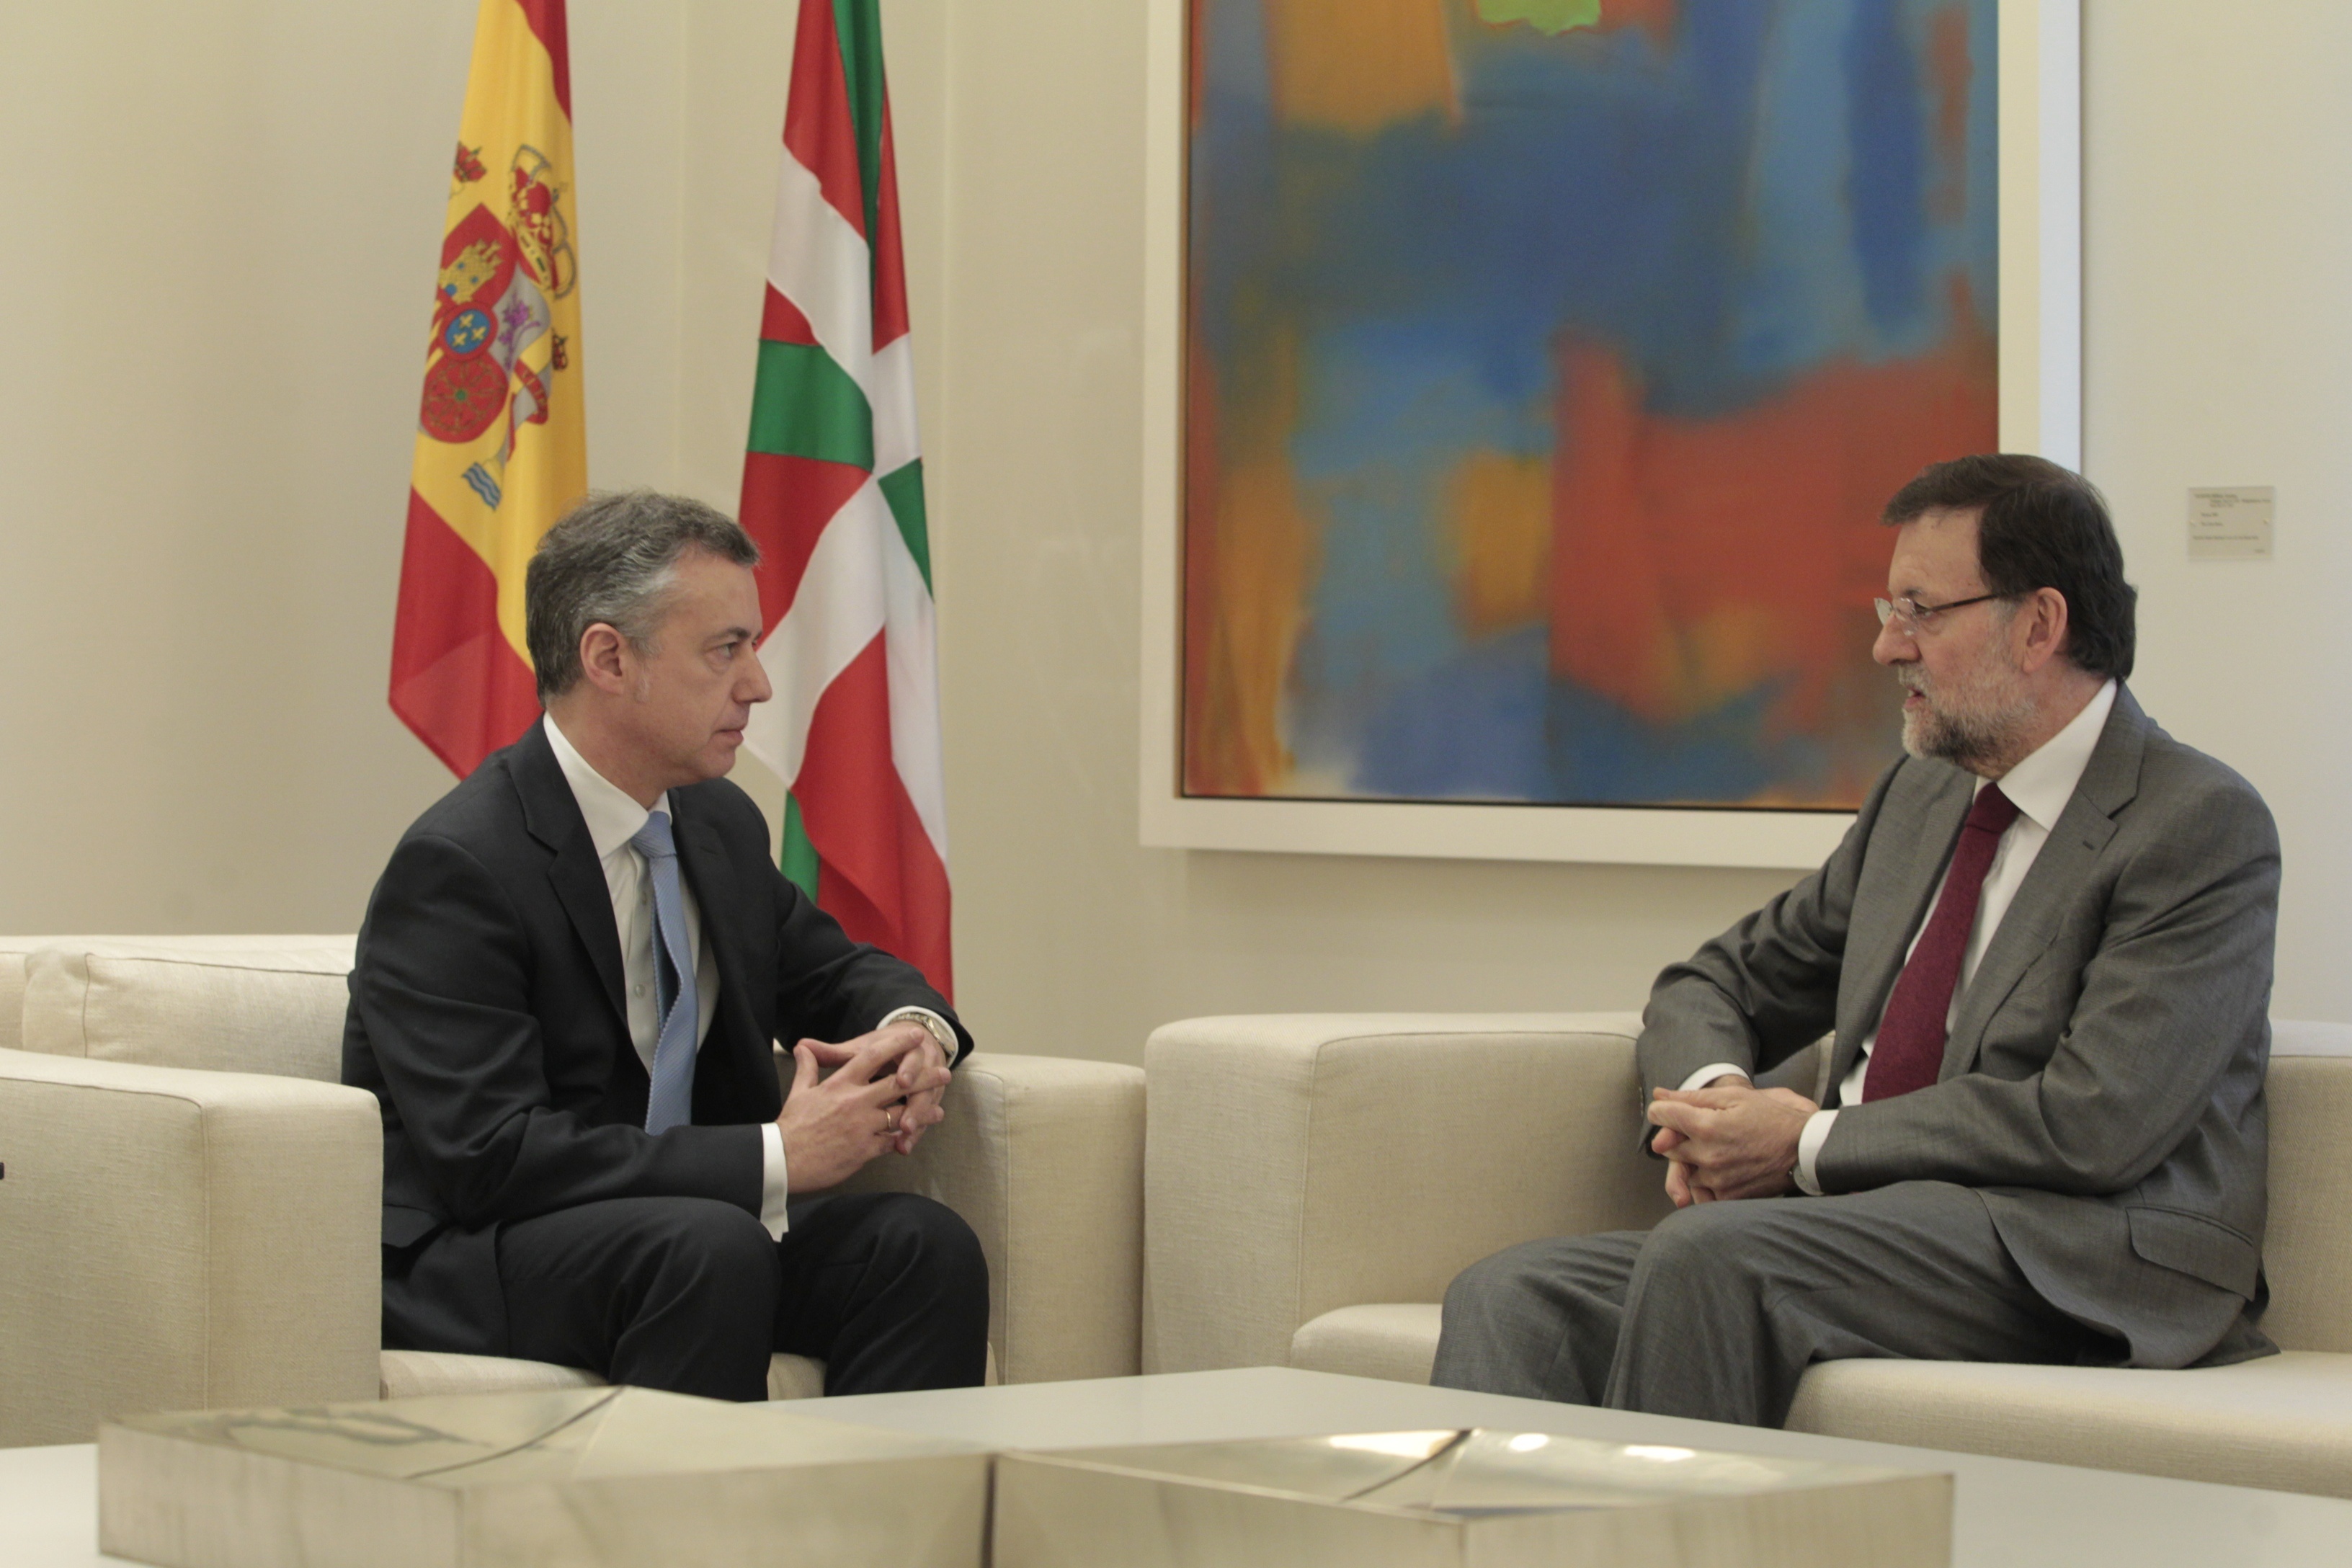 Concluye la reunión de casi tres horas entre Rajoy y Urkullu en el Palacio de la Moncloa